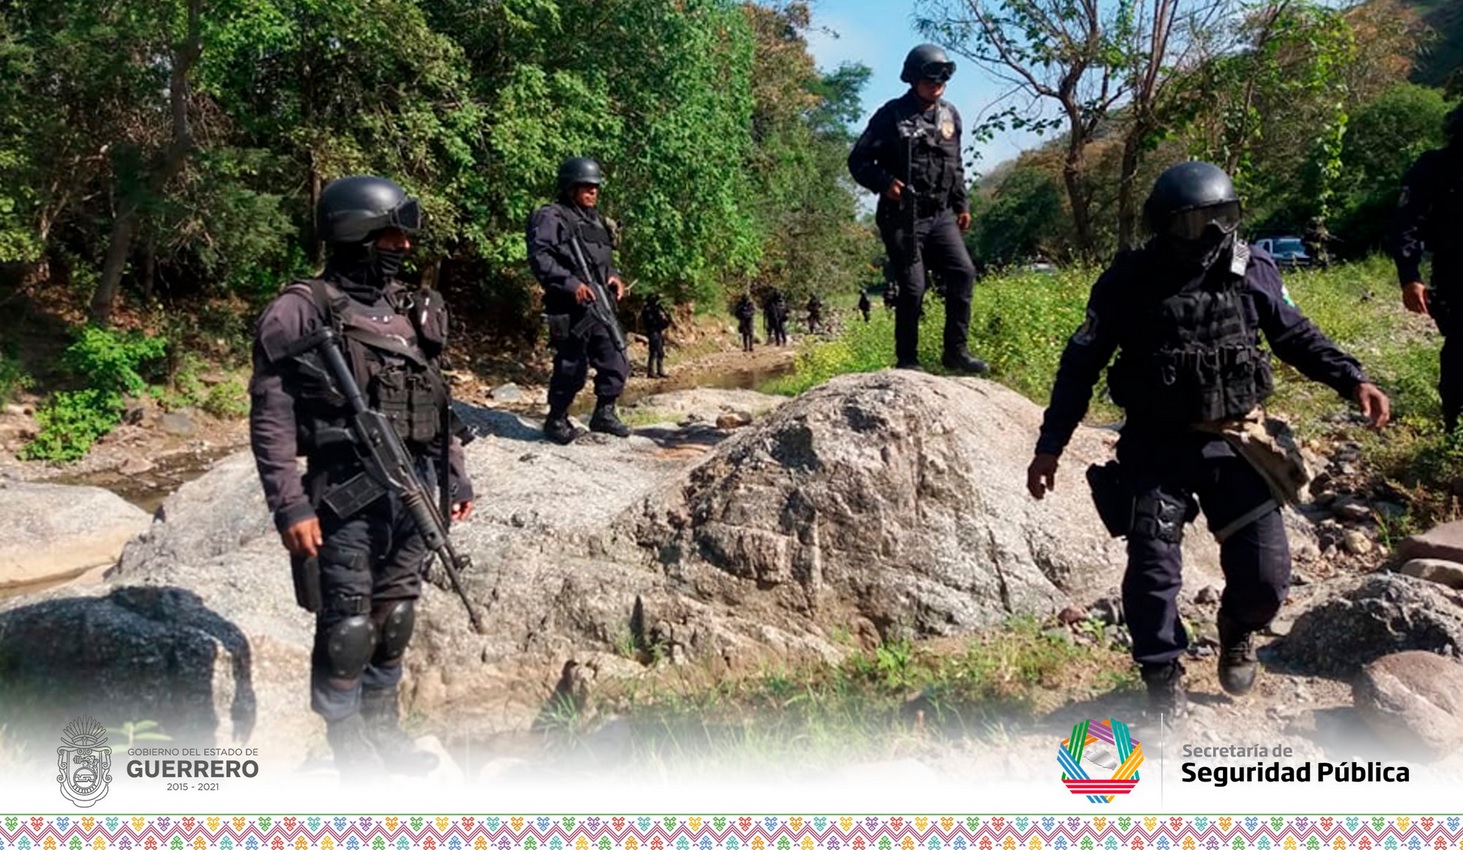 Suspenden clases en escuelas serranas de Guerrero tras irrupción de grupo armado